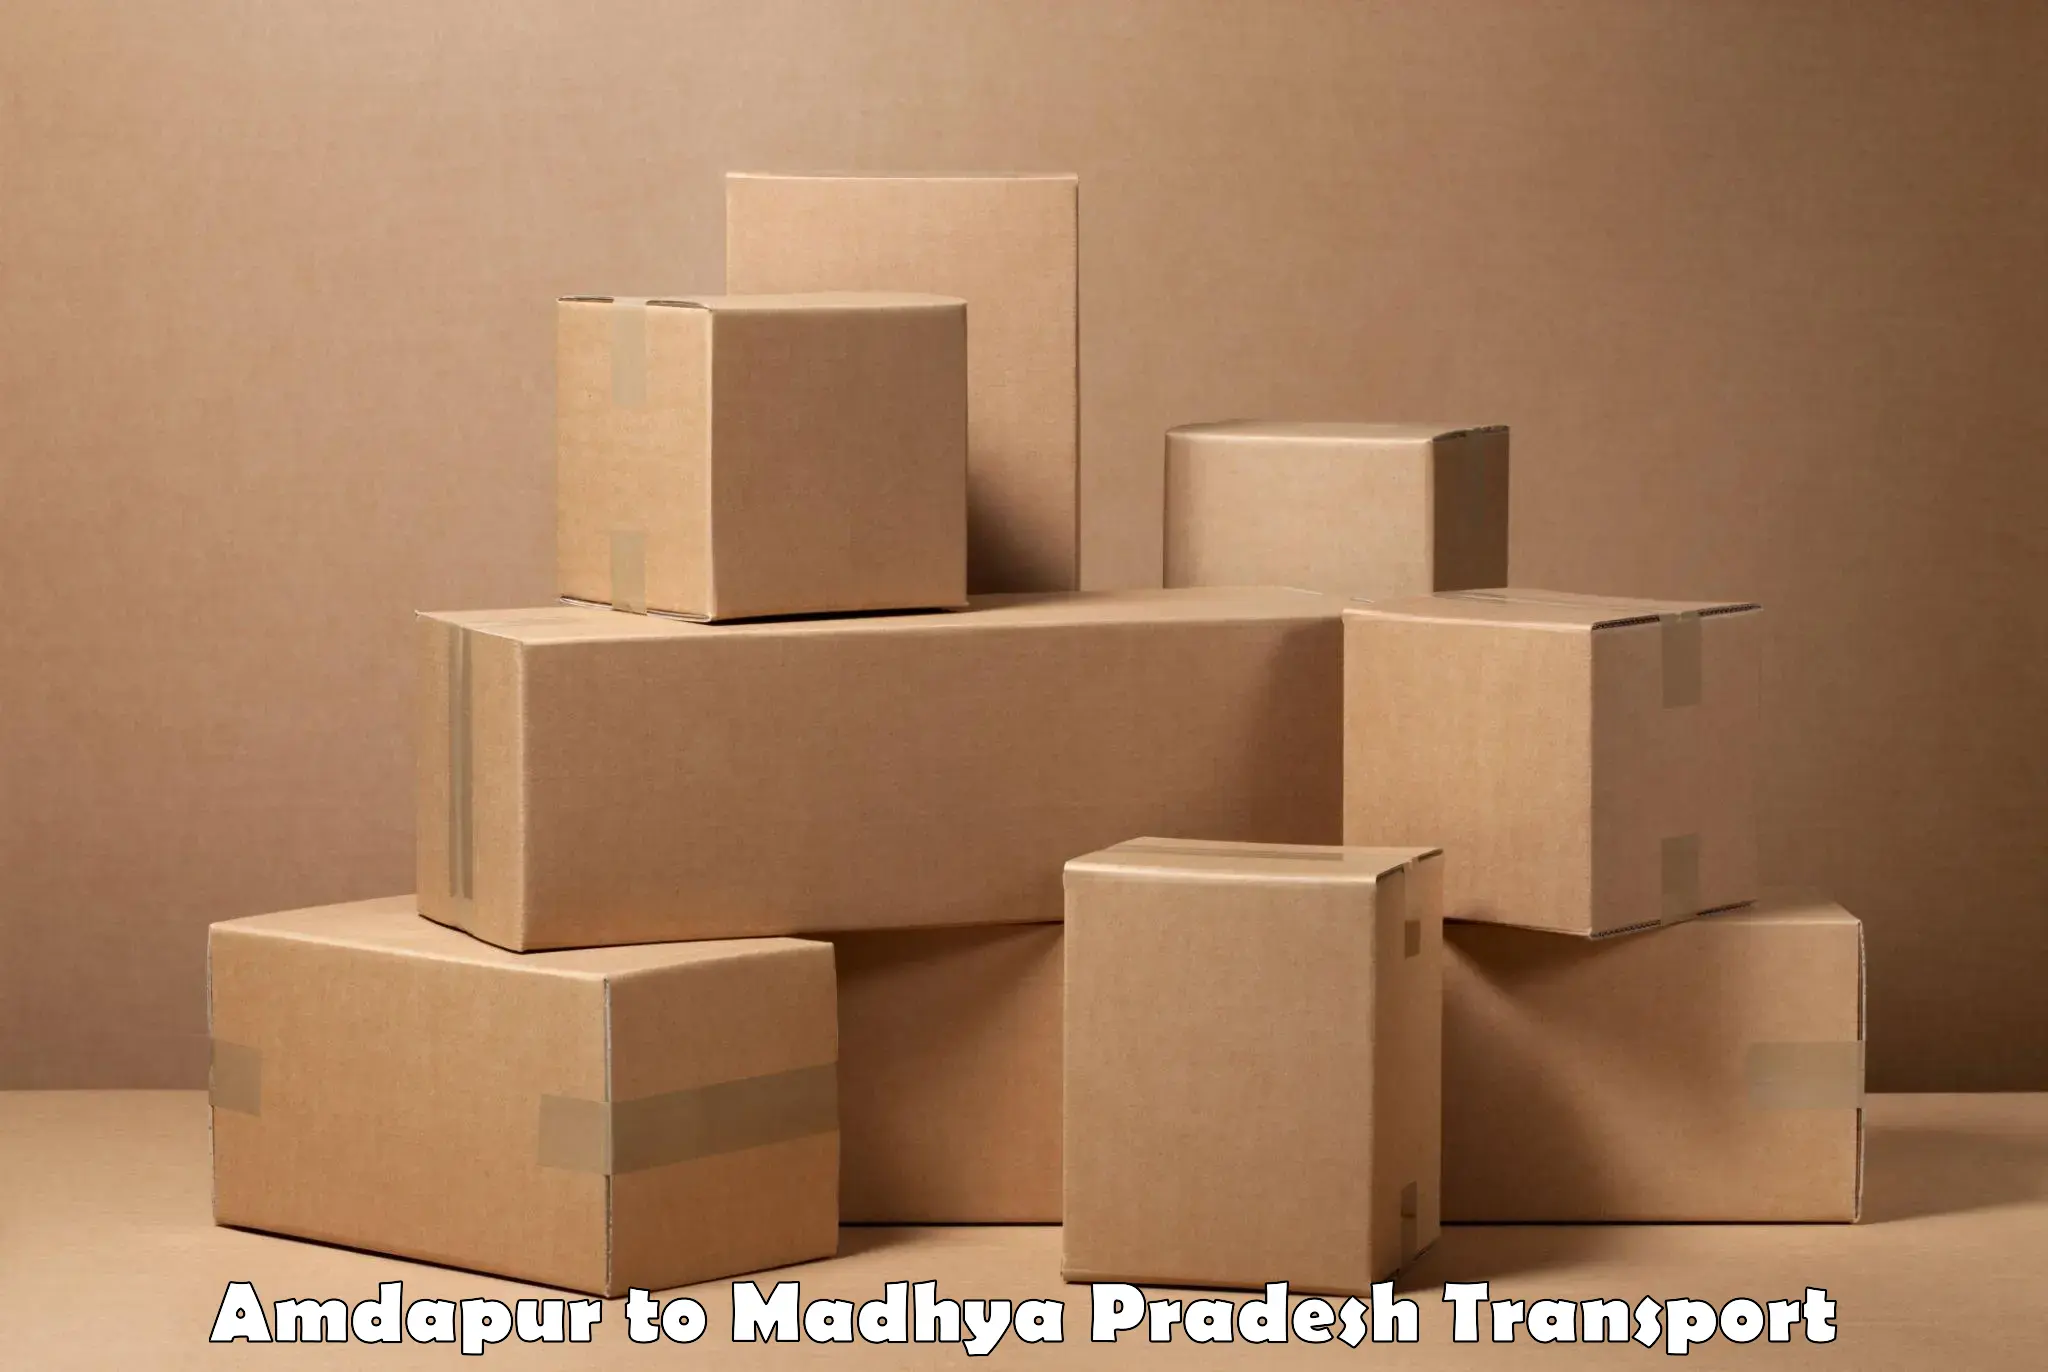 Delivery service Amdapur to Rewa